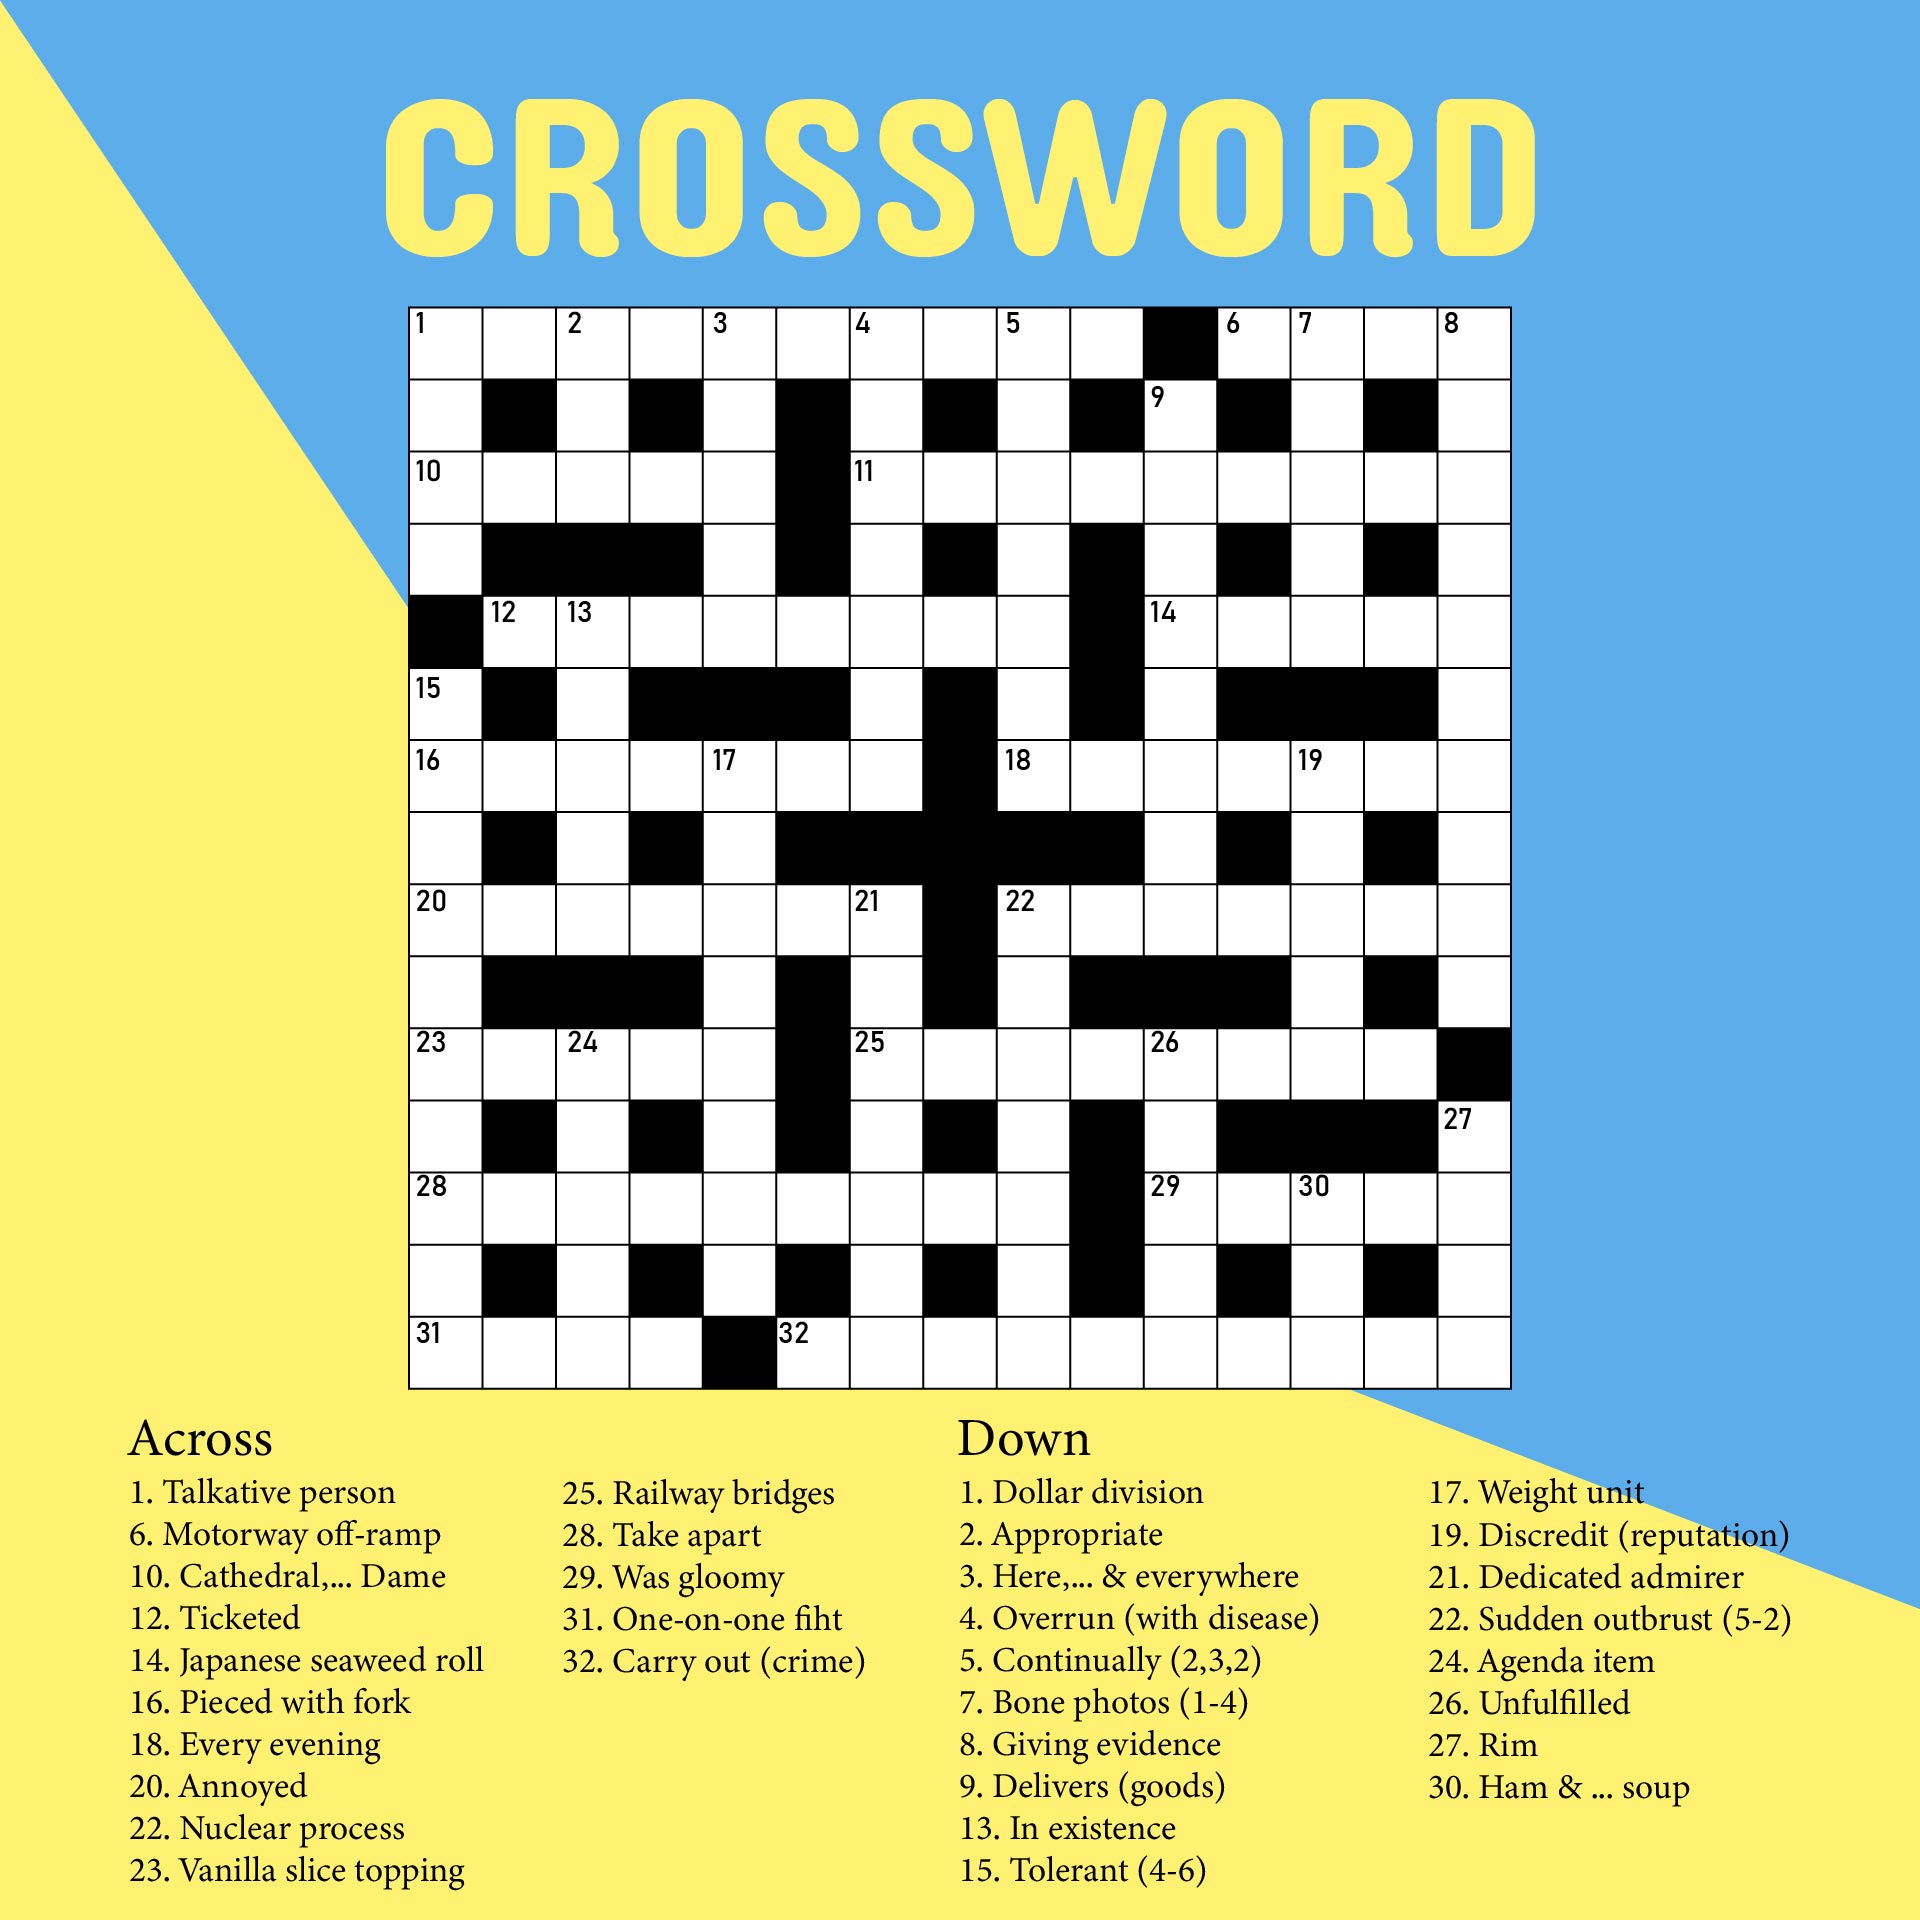 Crosswords for money. Автор крымского моста кроссворд